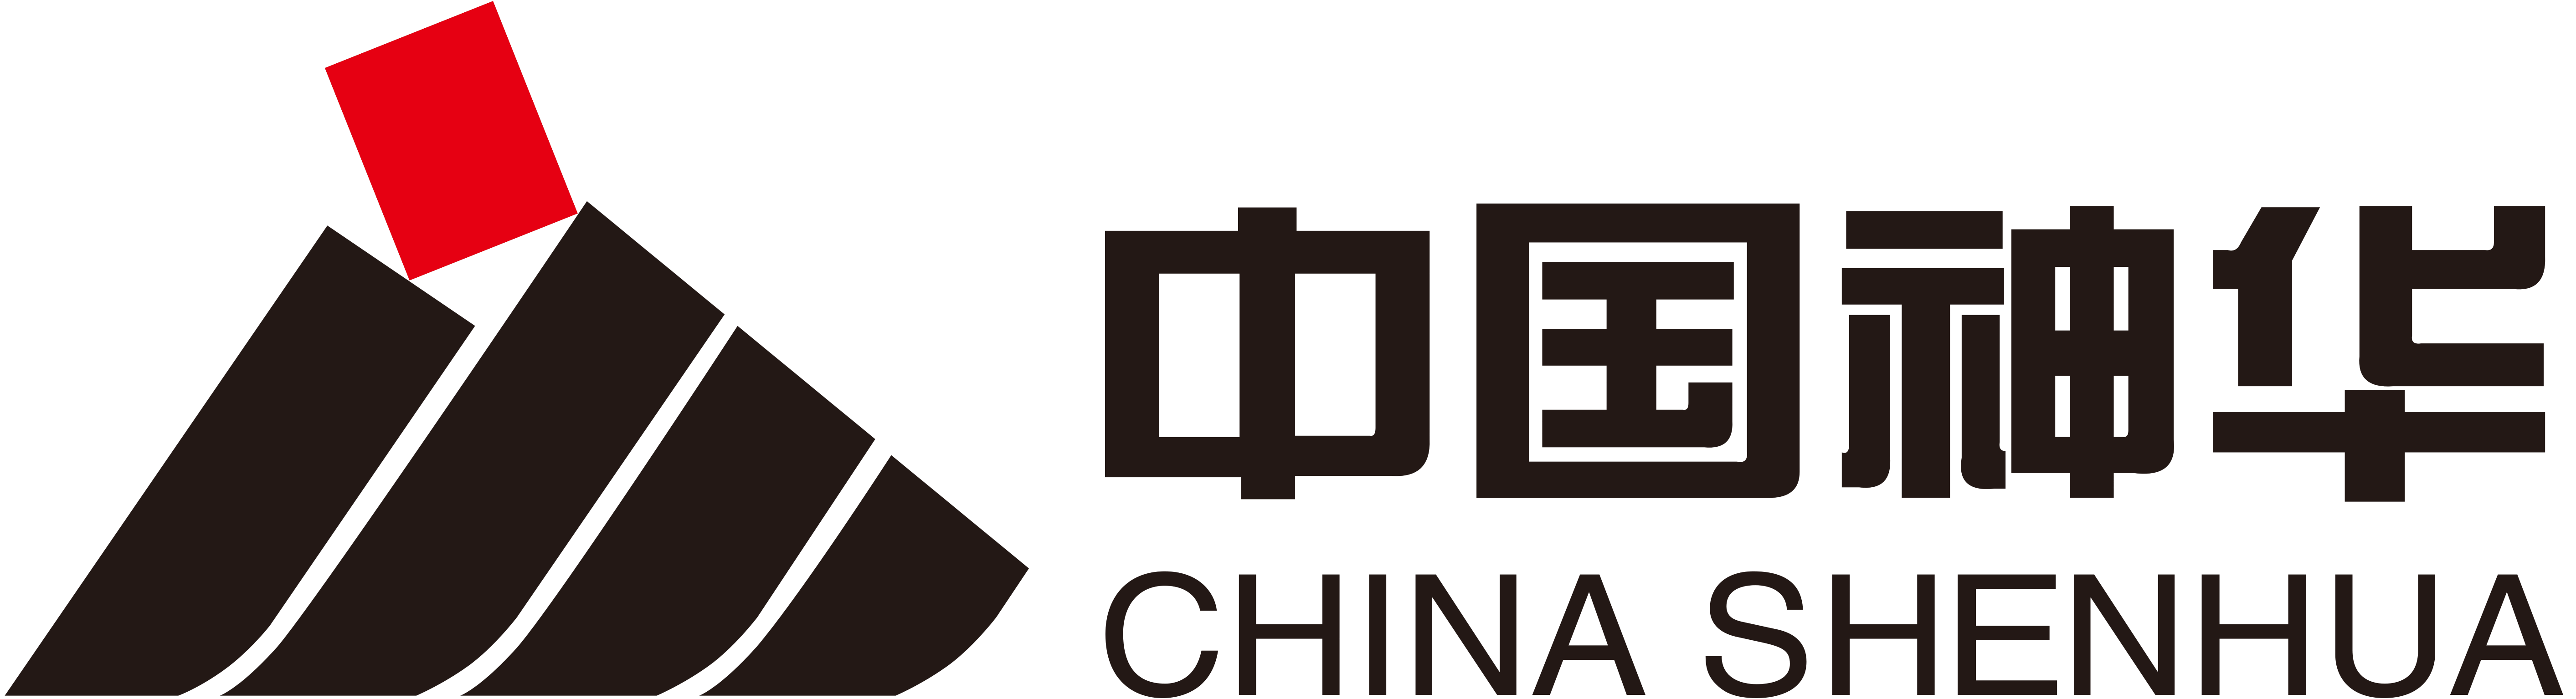 China Company Logo - China Shenhua Energy Company logo – Logos Download